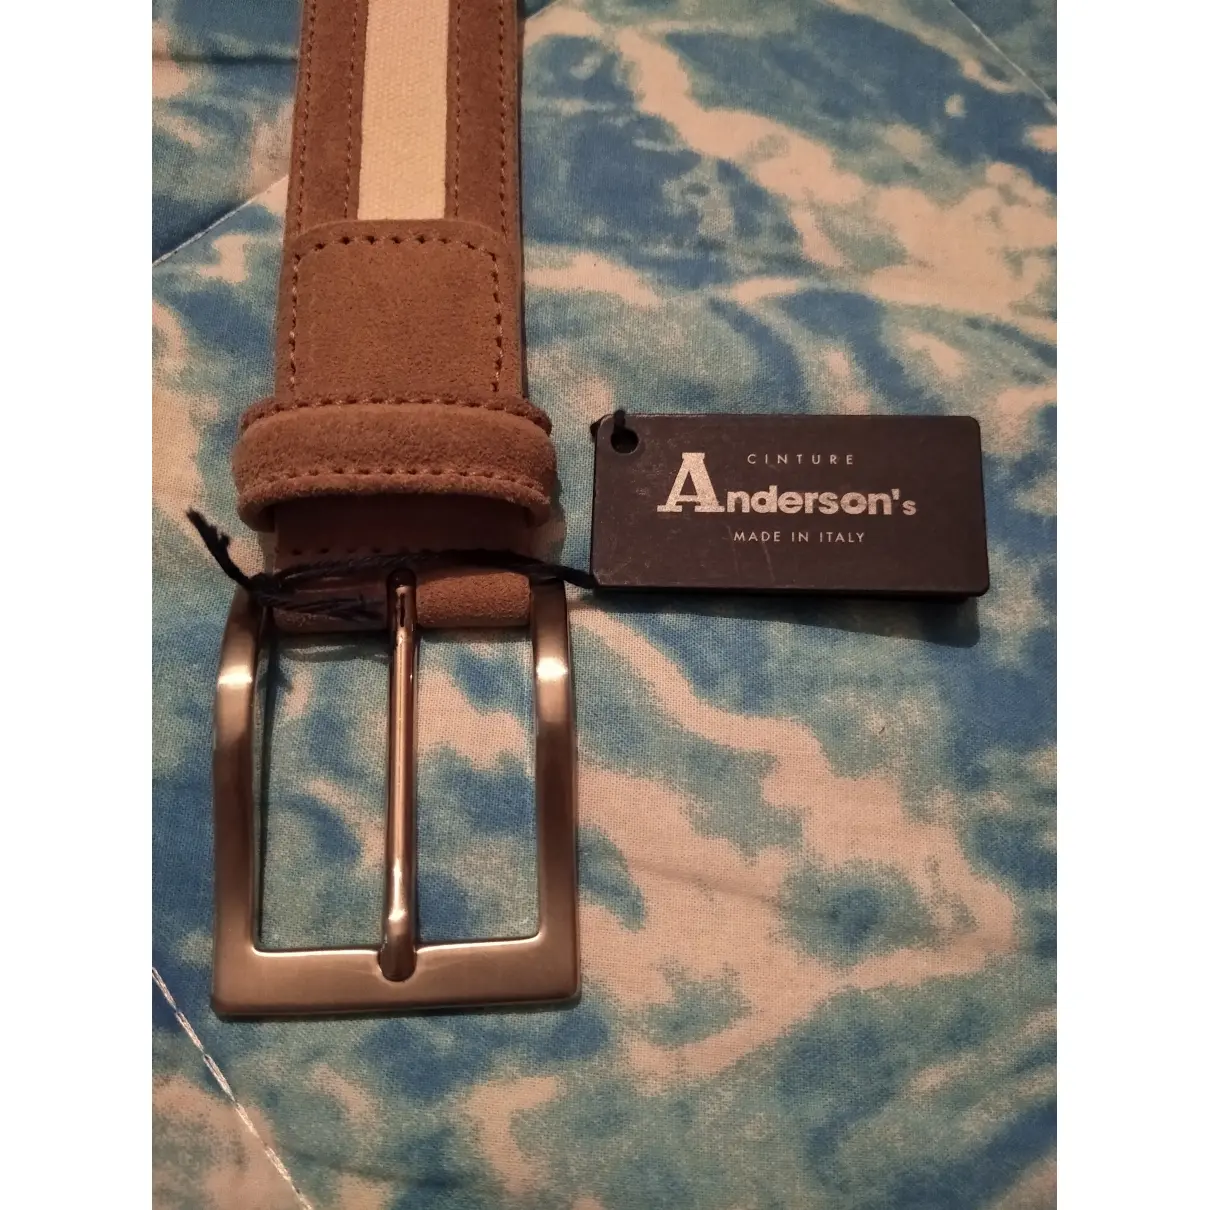 Buy Anderson's Belt online